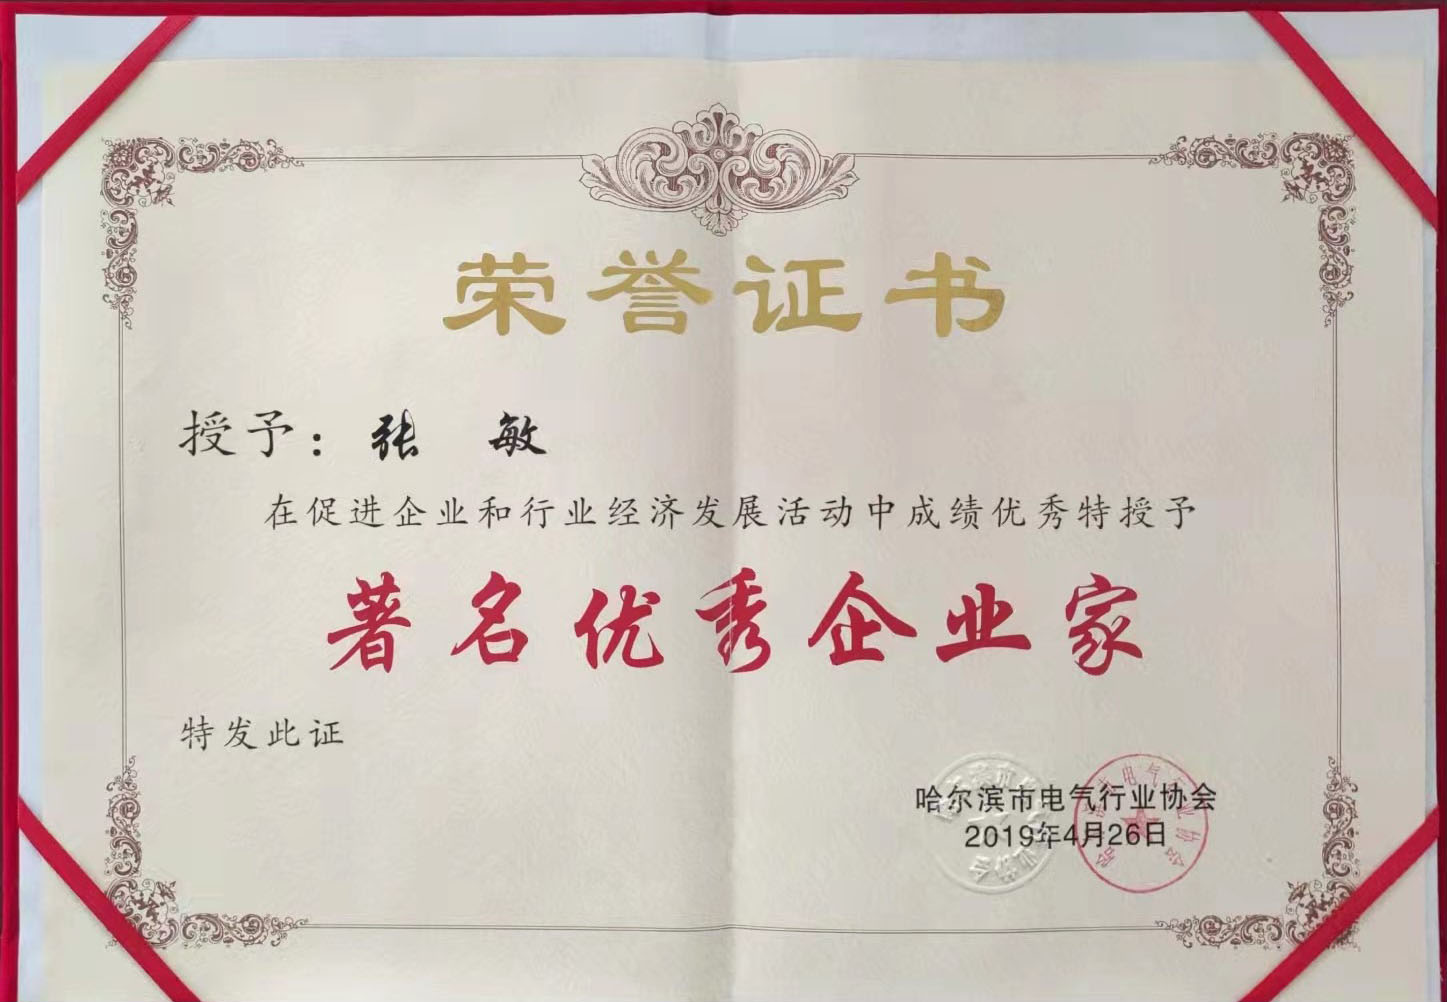 授予张敏 《著名优秀企业家》荣誉证书